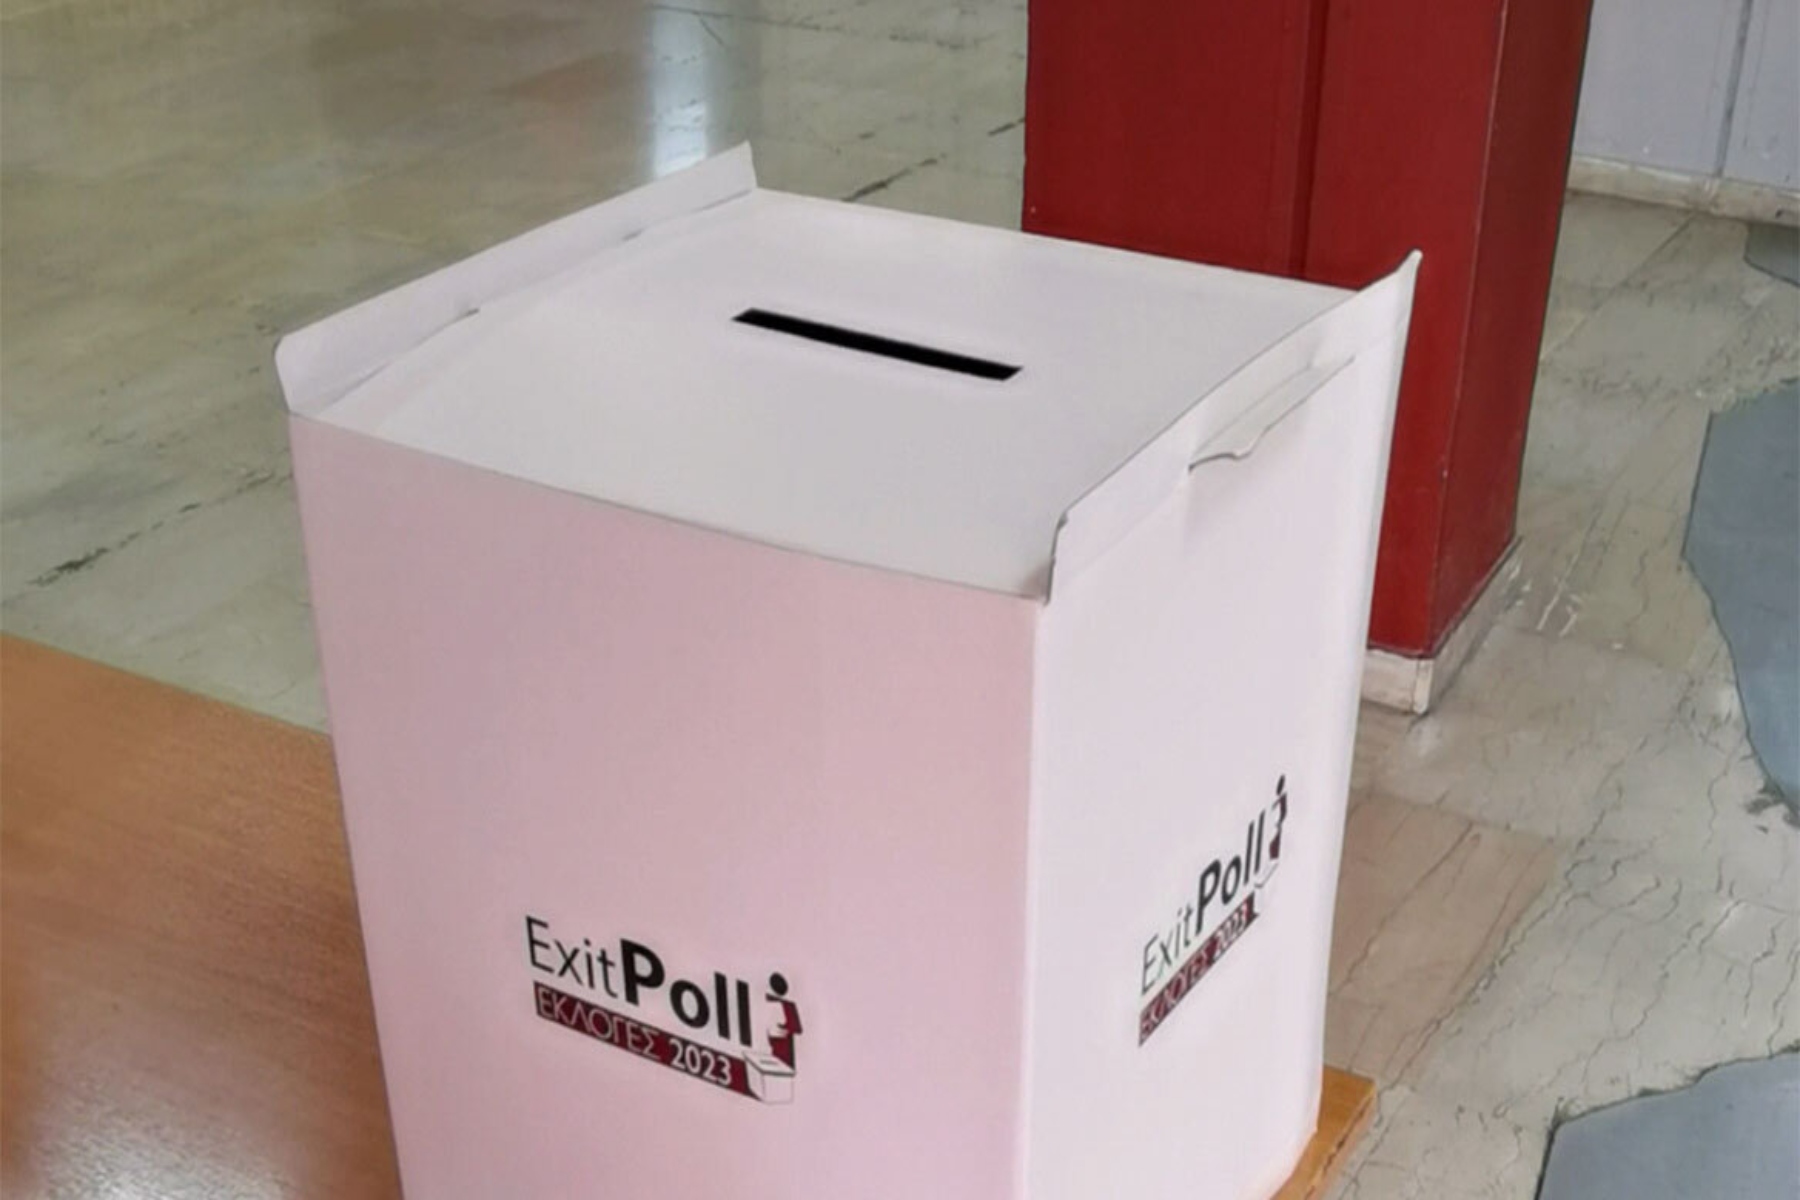 Exit poll: Τι ώρα θα γνωρίζουμε τα αποτελέσματα των εκλογών απόψε;